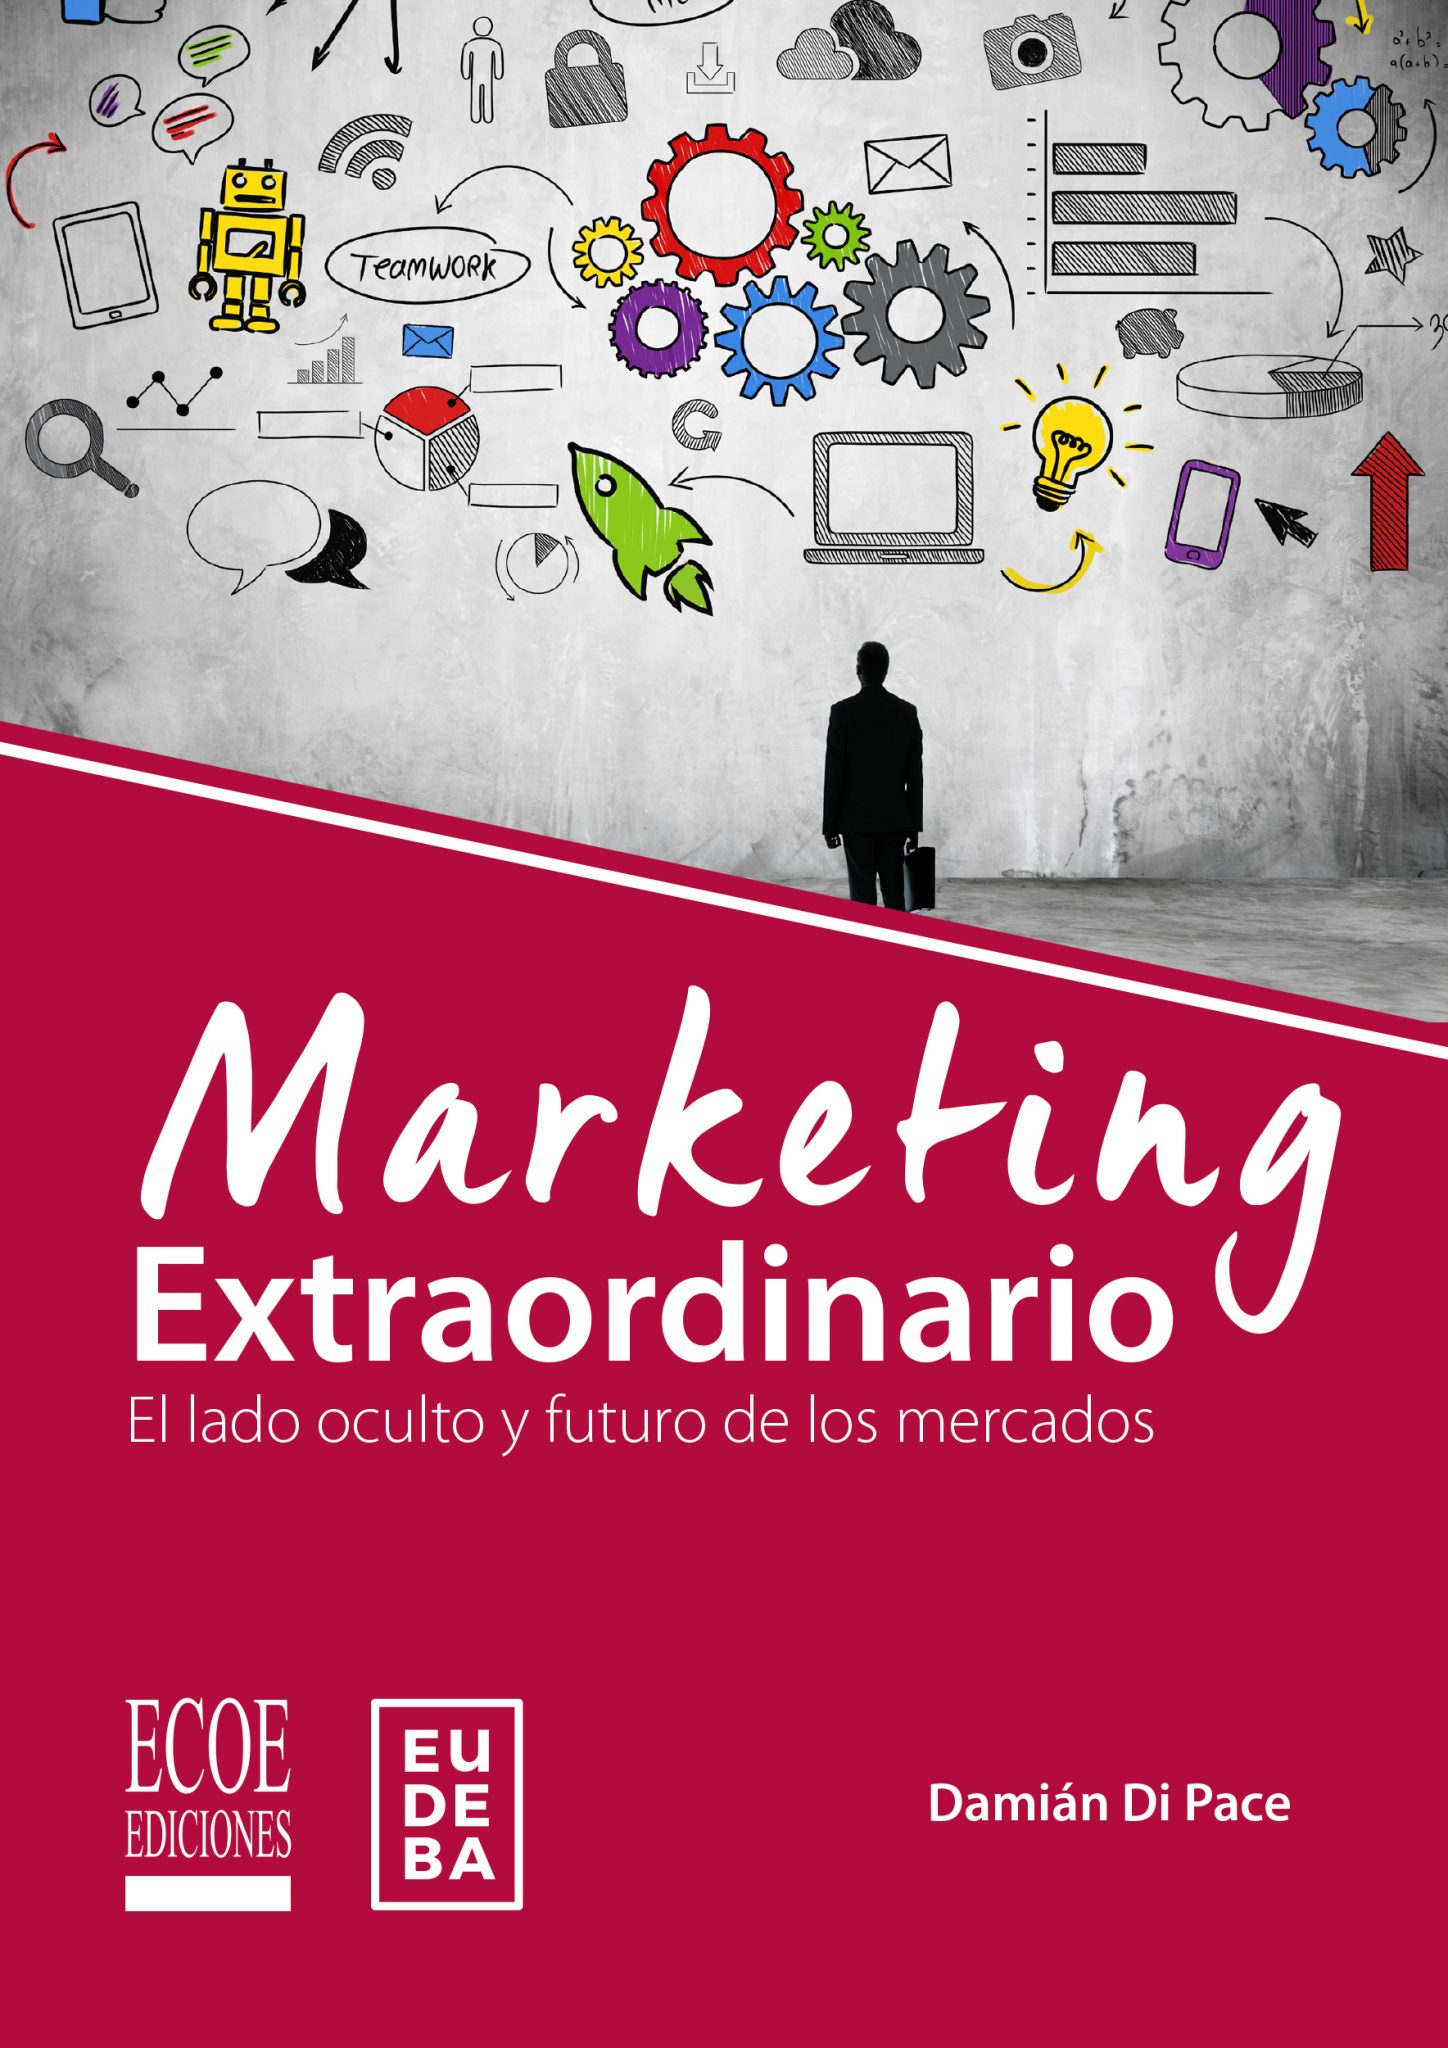 Marketing extraordinario – Ecoe Ediciones